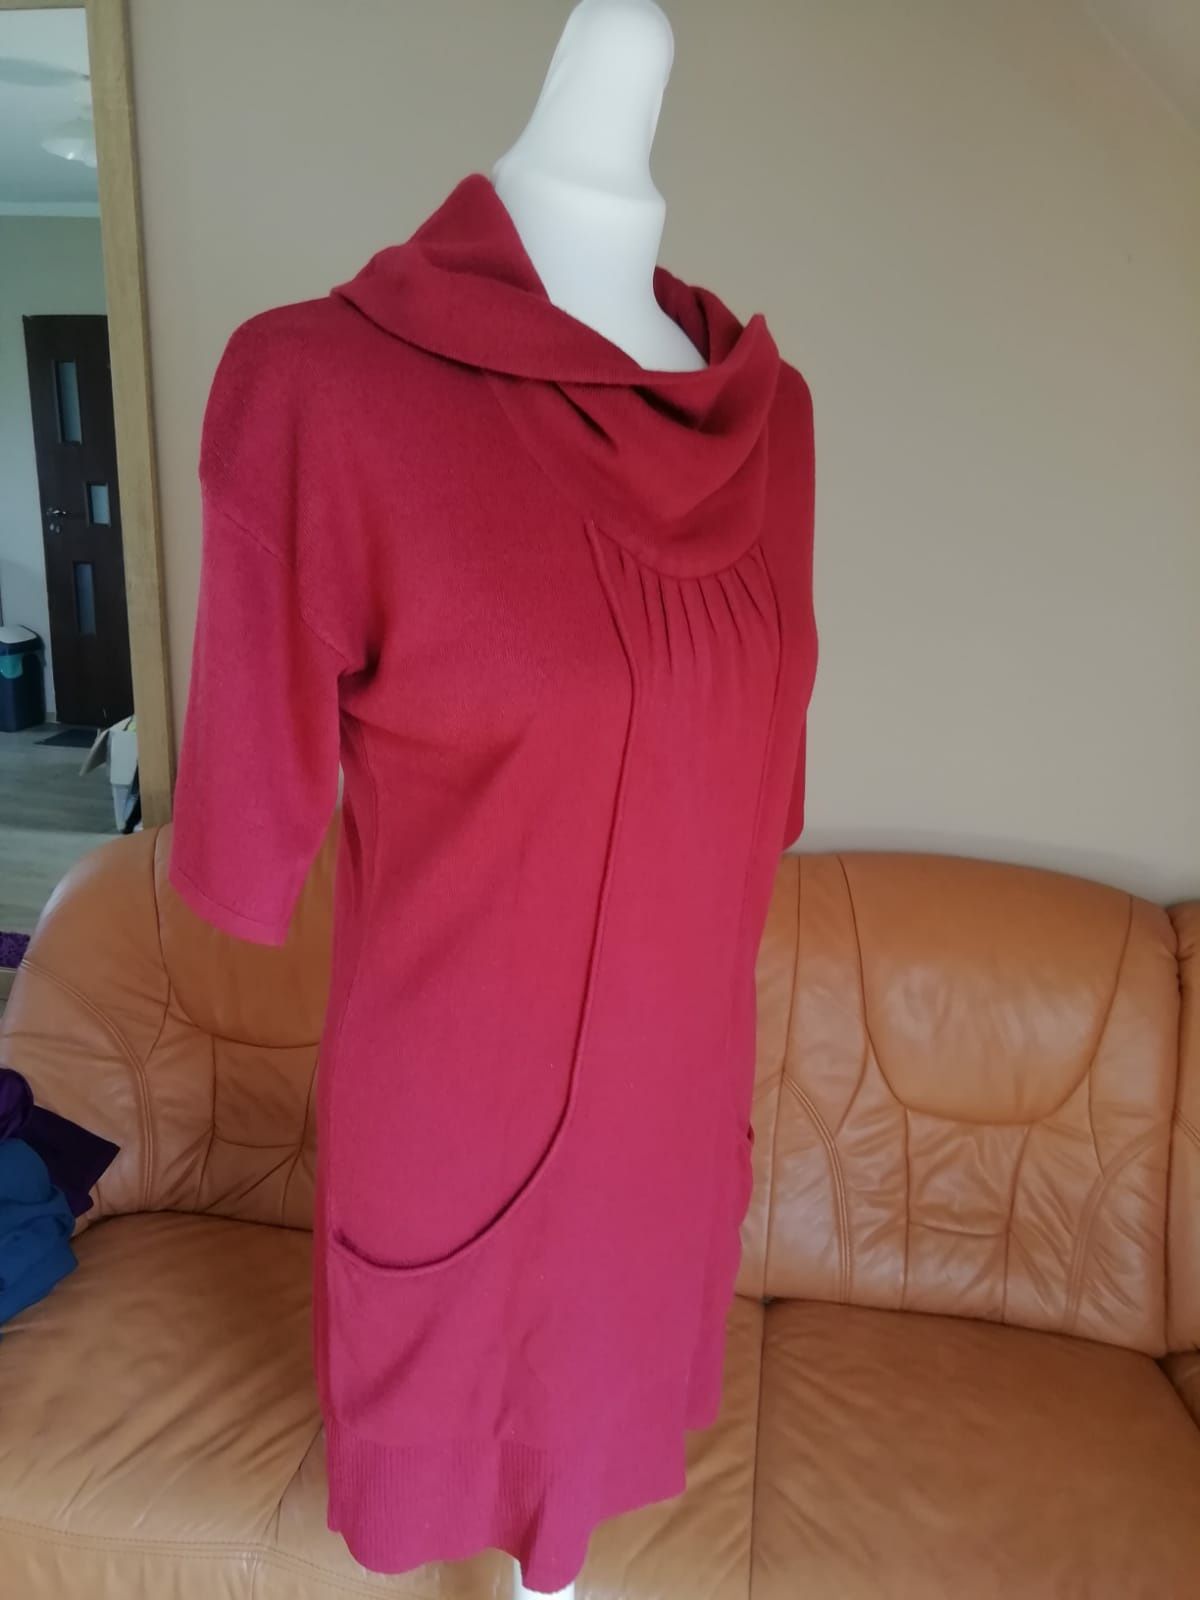 Tunika sukienka swetrowa New Look, 40/L, bordo/czerwone wino